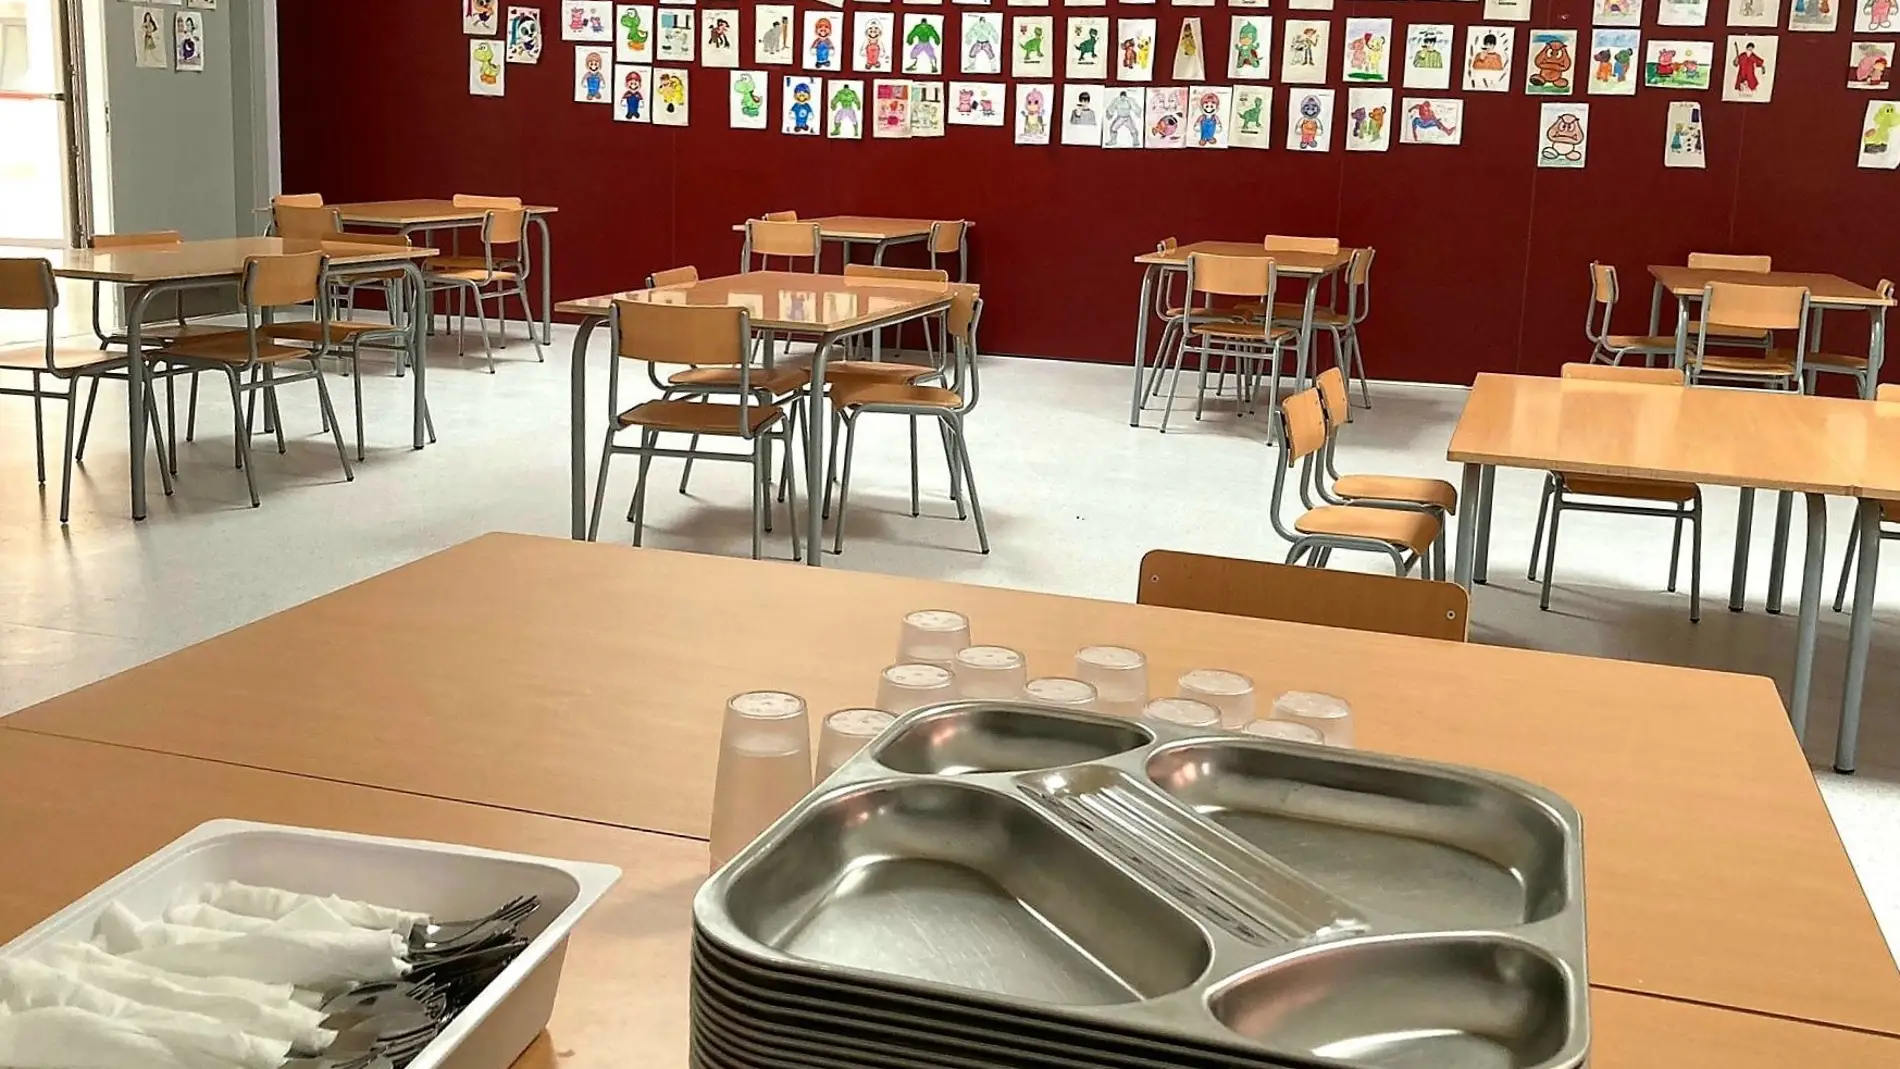 El servicio de comedor escolar de verano comienza hoy en seis centros y llegará a un centenar de alumnos en la capital